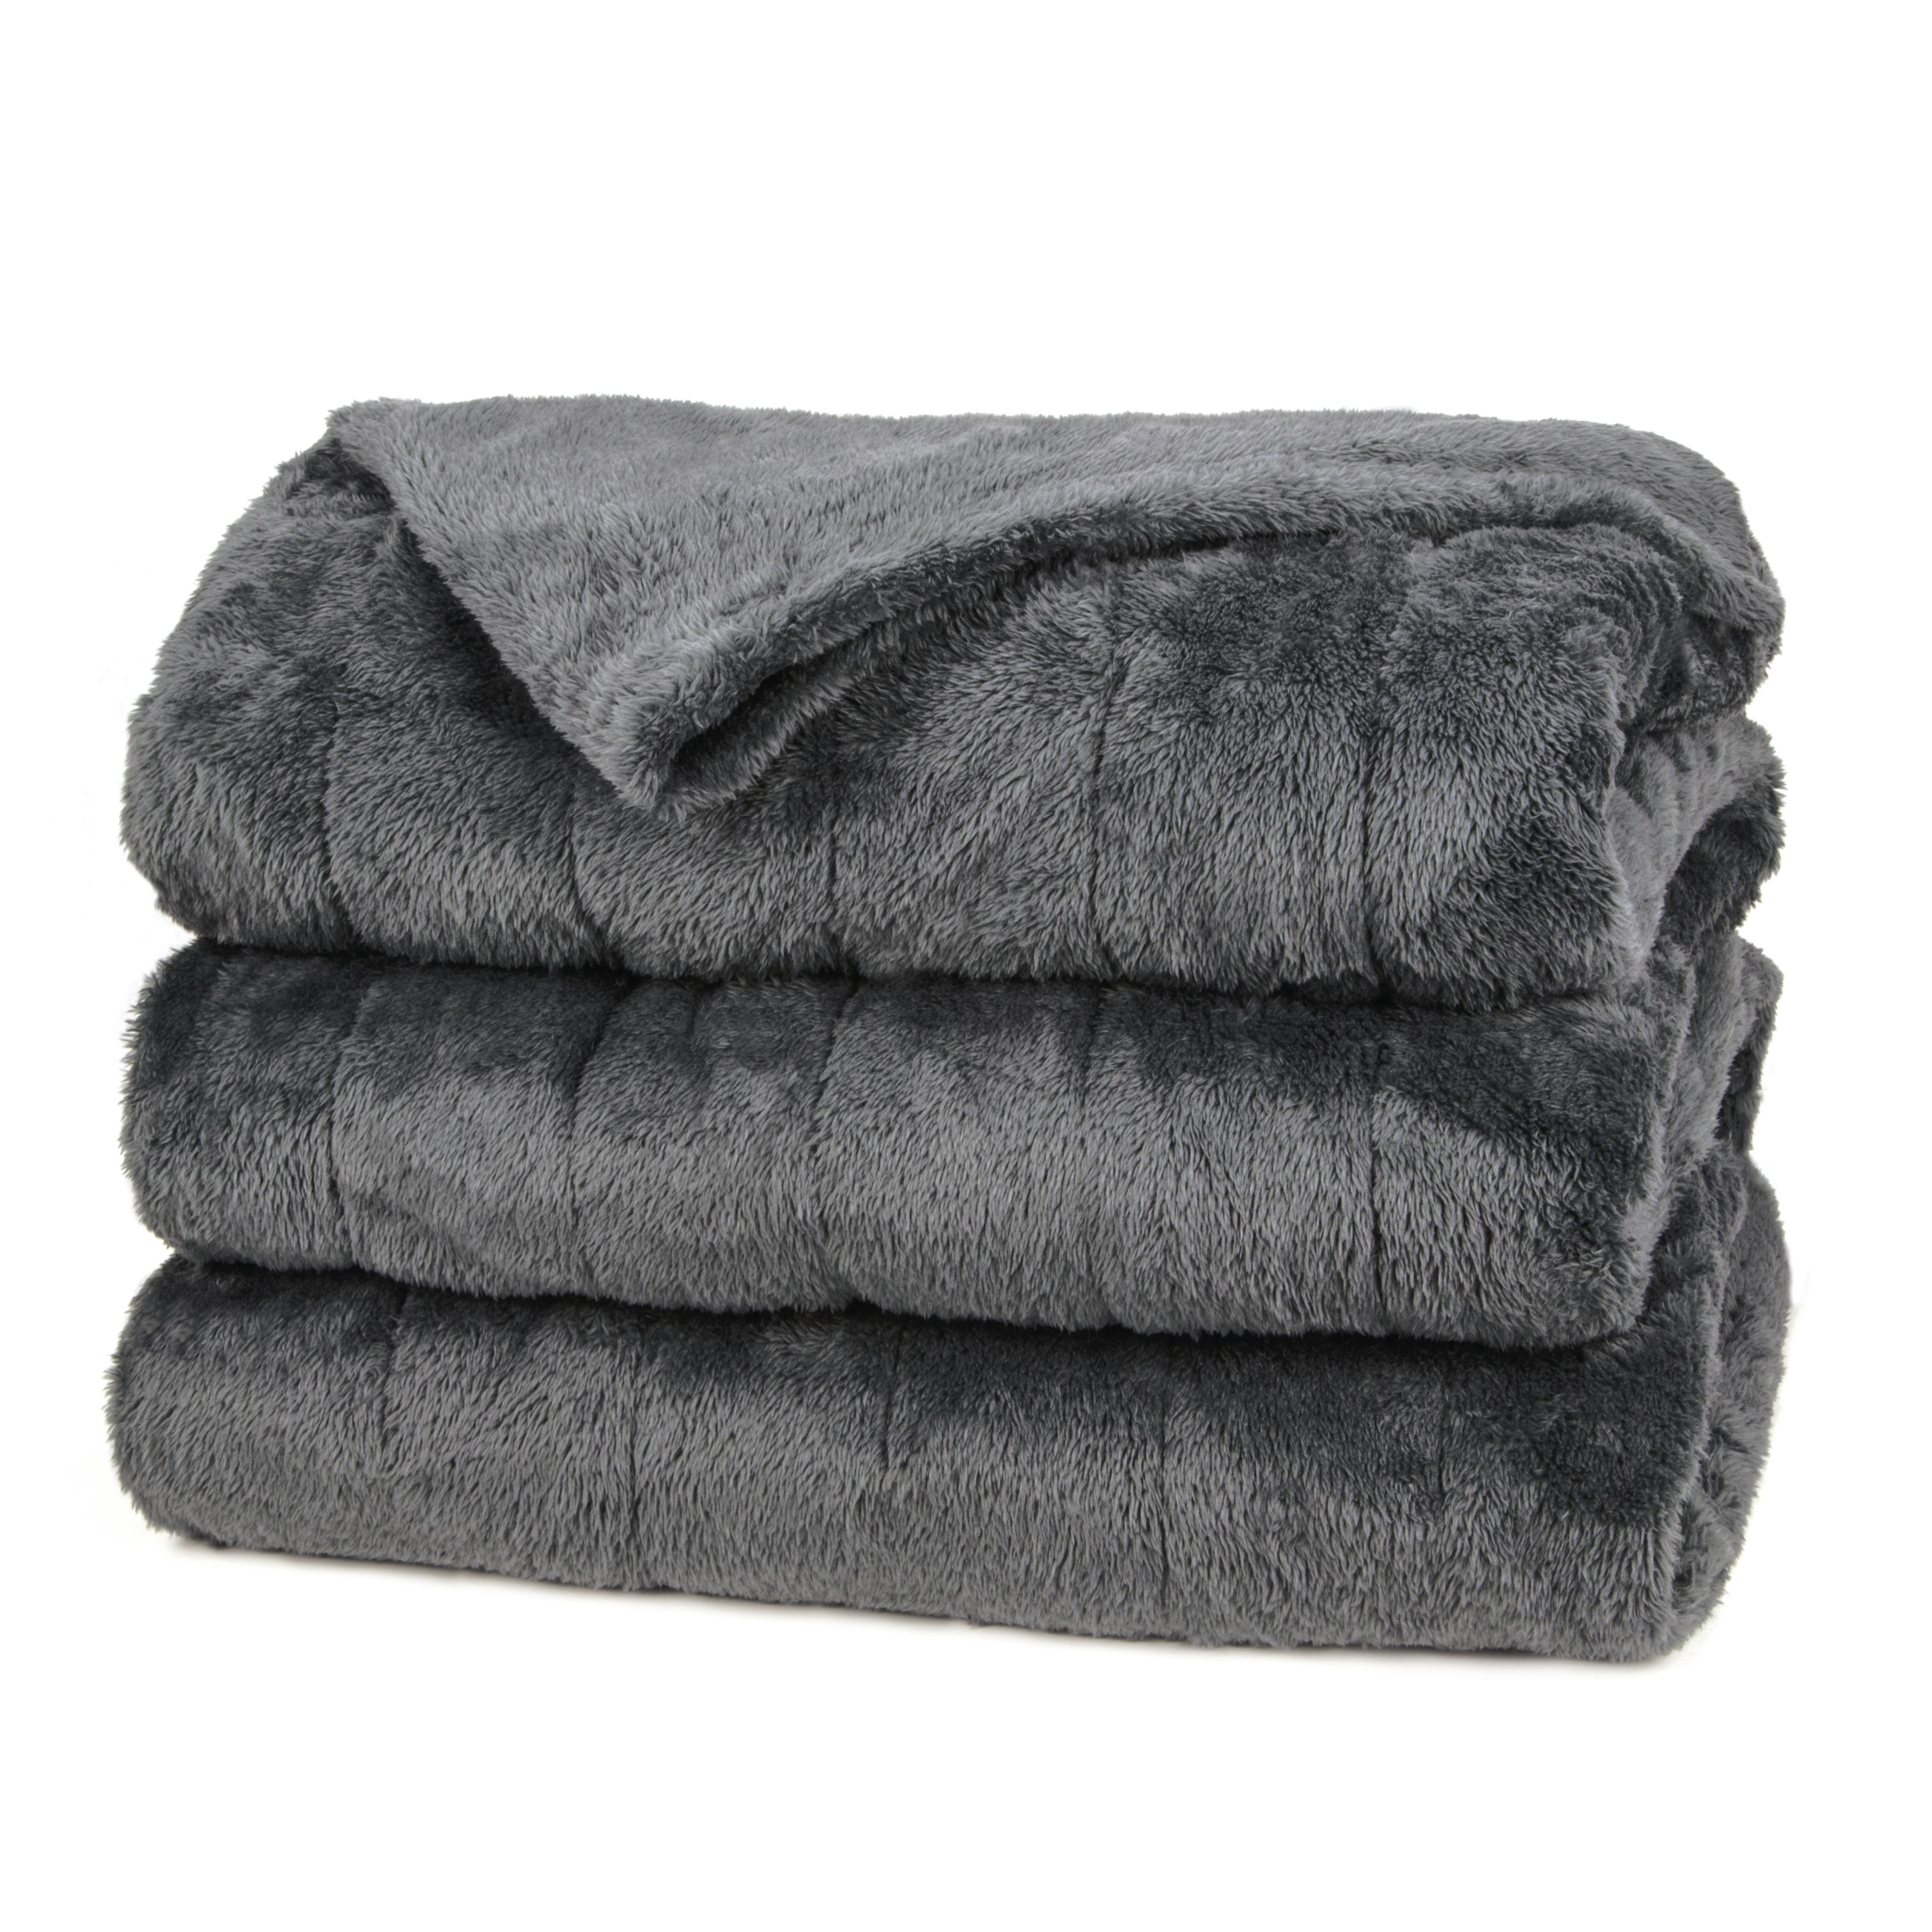 velour blankets